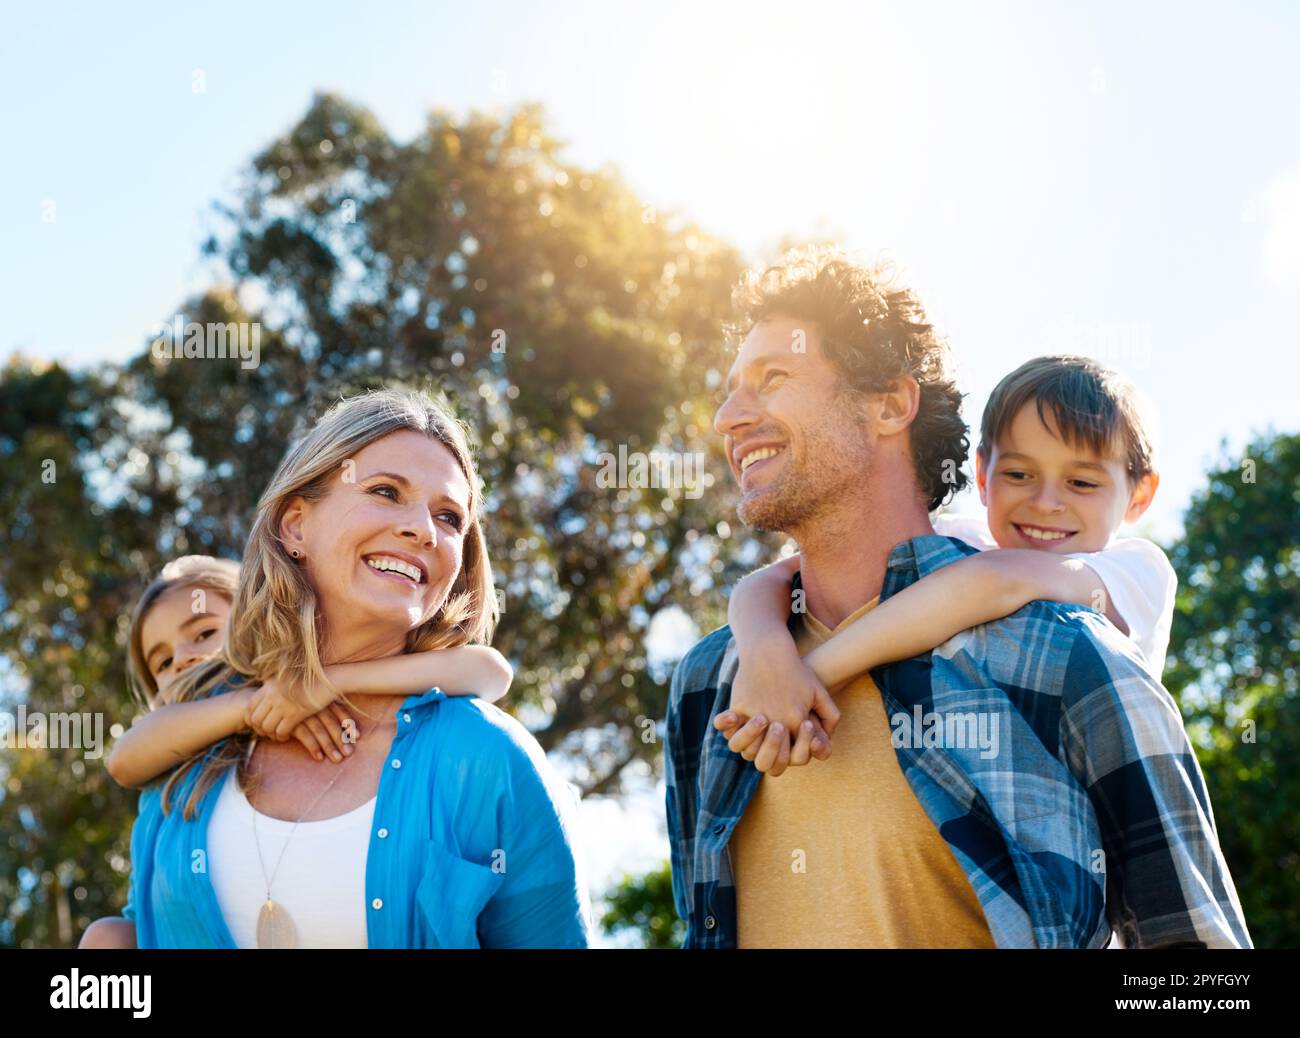 Das sind die Momente, die Familie machen. Eine glückliche Familie, die Zeit zusammen im Freien verbringt. Stockfoto